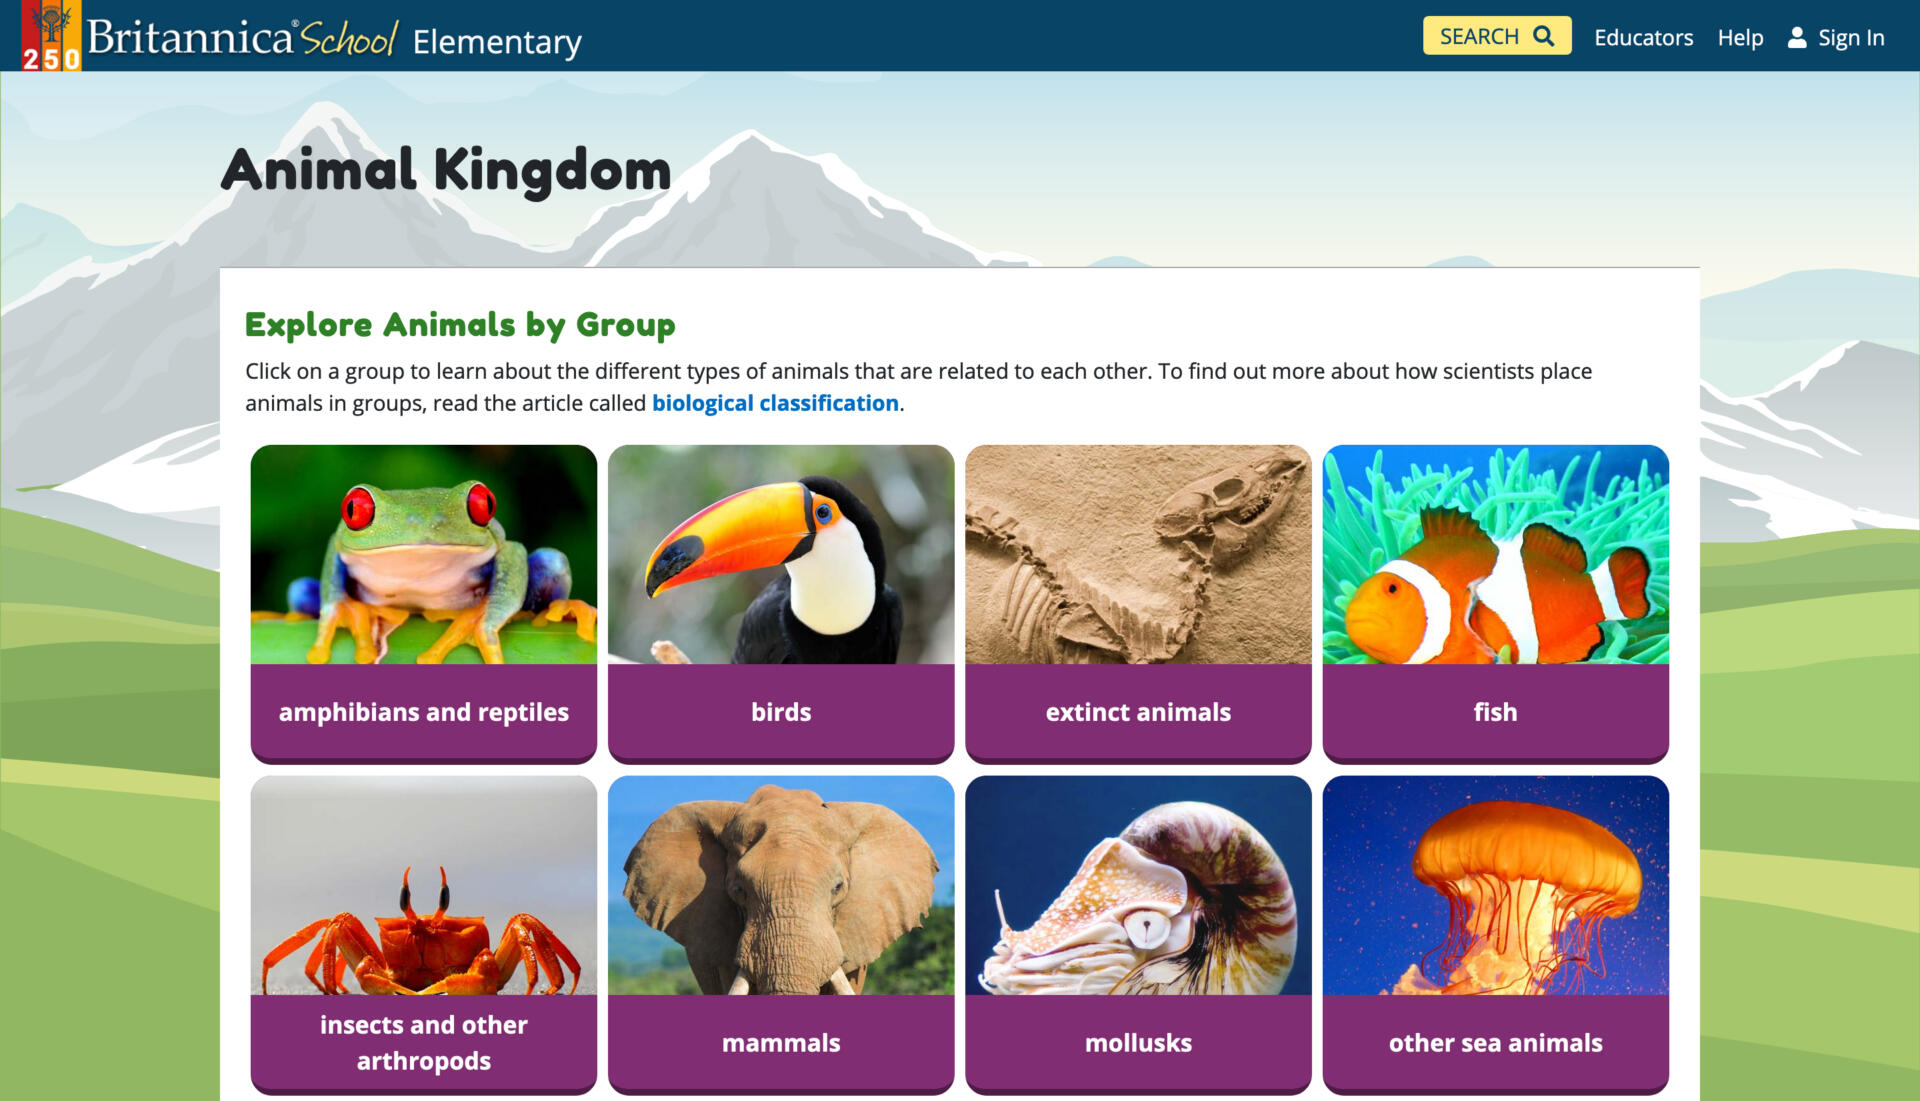 britannica school resources - Ecosia - Images